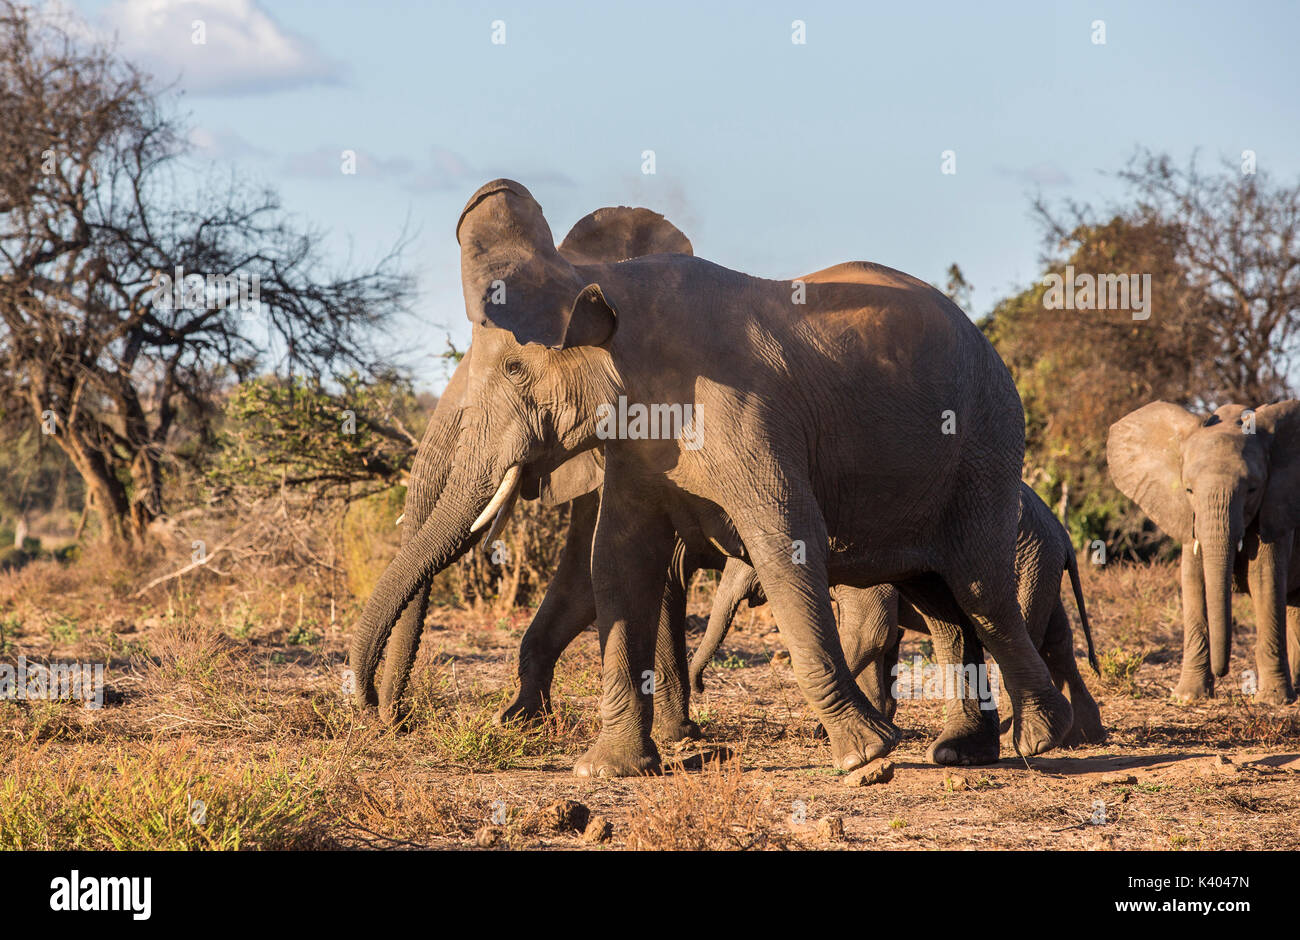 Eine Elefantenkuh (Loxodonta africana) Kopfschüttelnd in einem reizbaren Art und Weise mit der Herde im Hintergrund Stockfoto